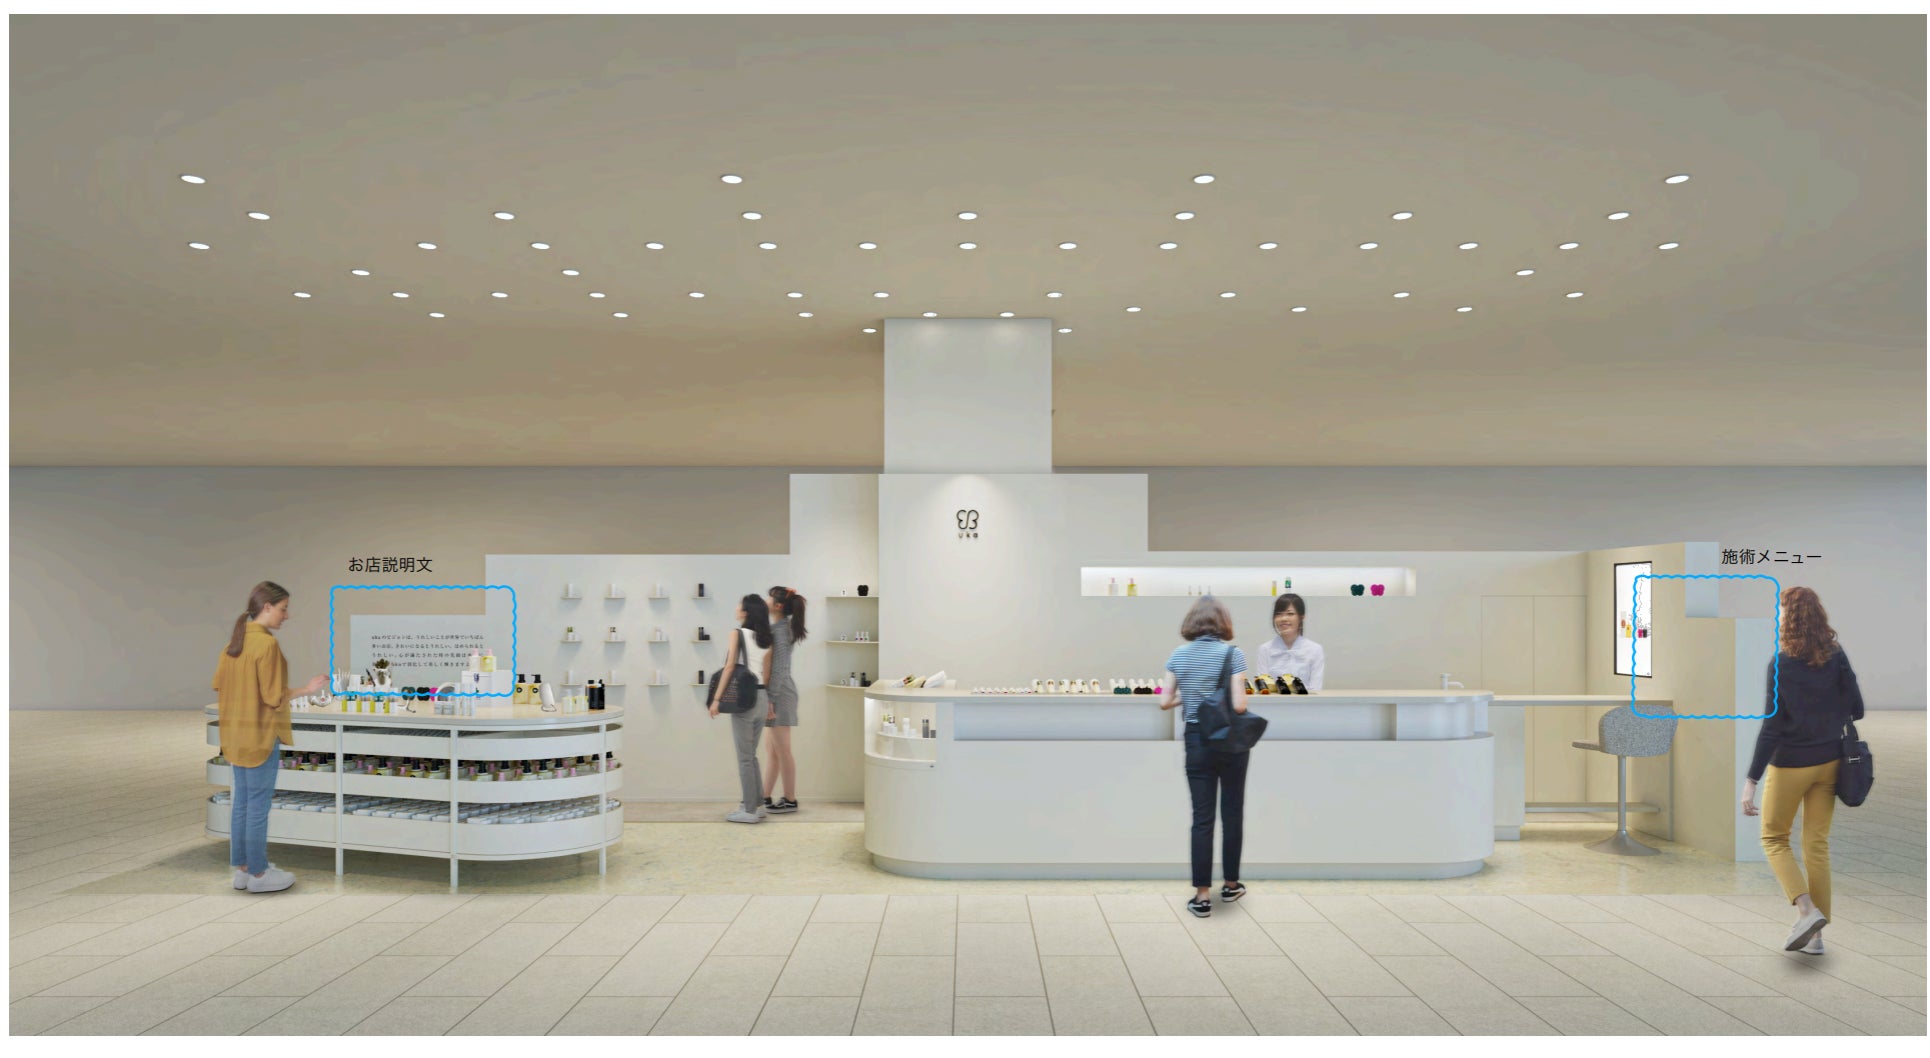 ハローセンダイ。9月15日(金)より仙台パルコ2にuka storeがオープン。オープンを記念したキャンペーンも